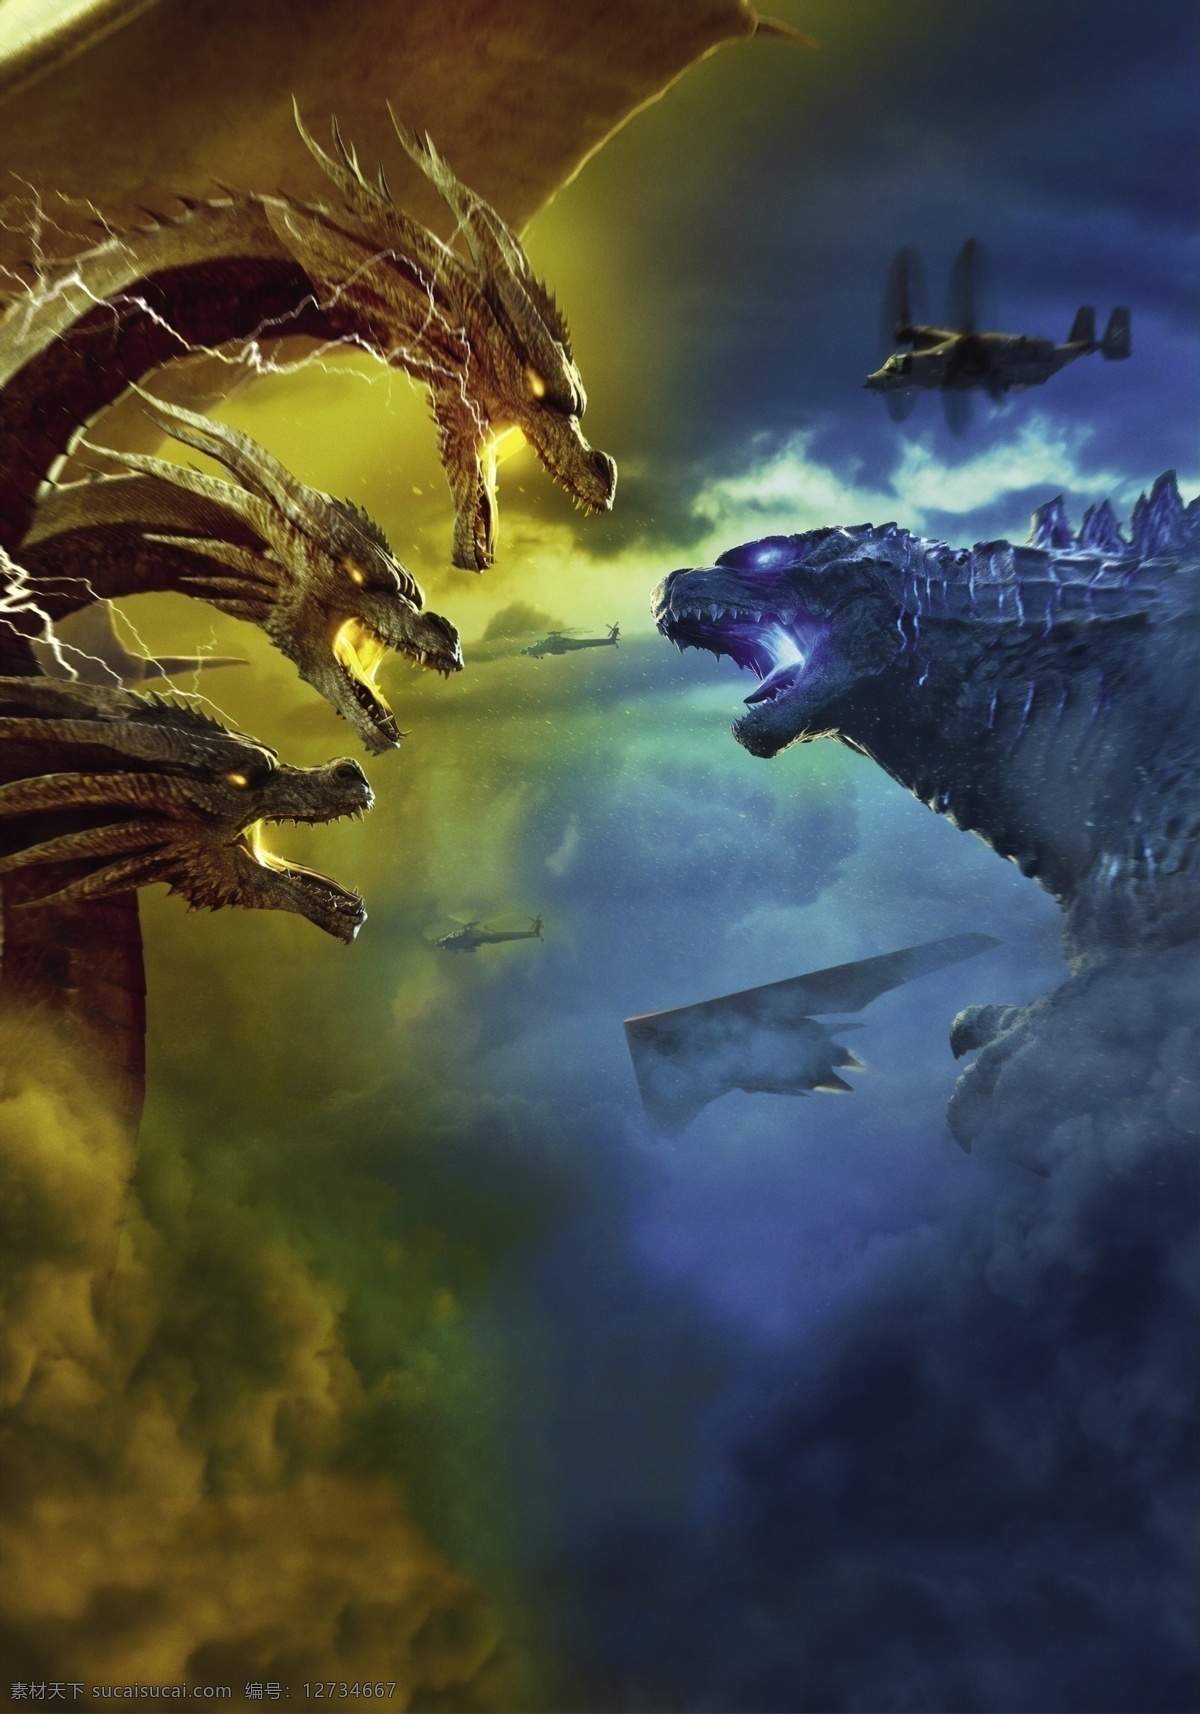 哥斯拉2 怪兽之王 哥斯拉 拉顿 摩斯拉 基多拉 怪兽 巢穴 洞穴 核辐射 怪兽电影 灾难片 科幻片 文化艺术 影视娱乐